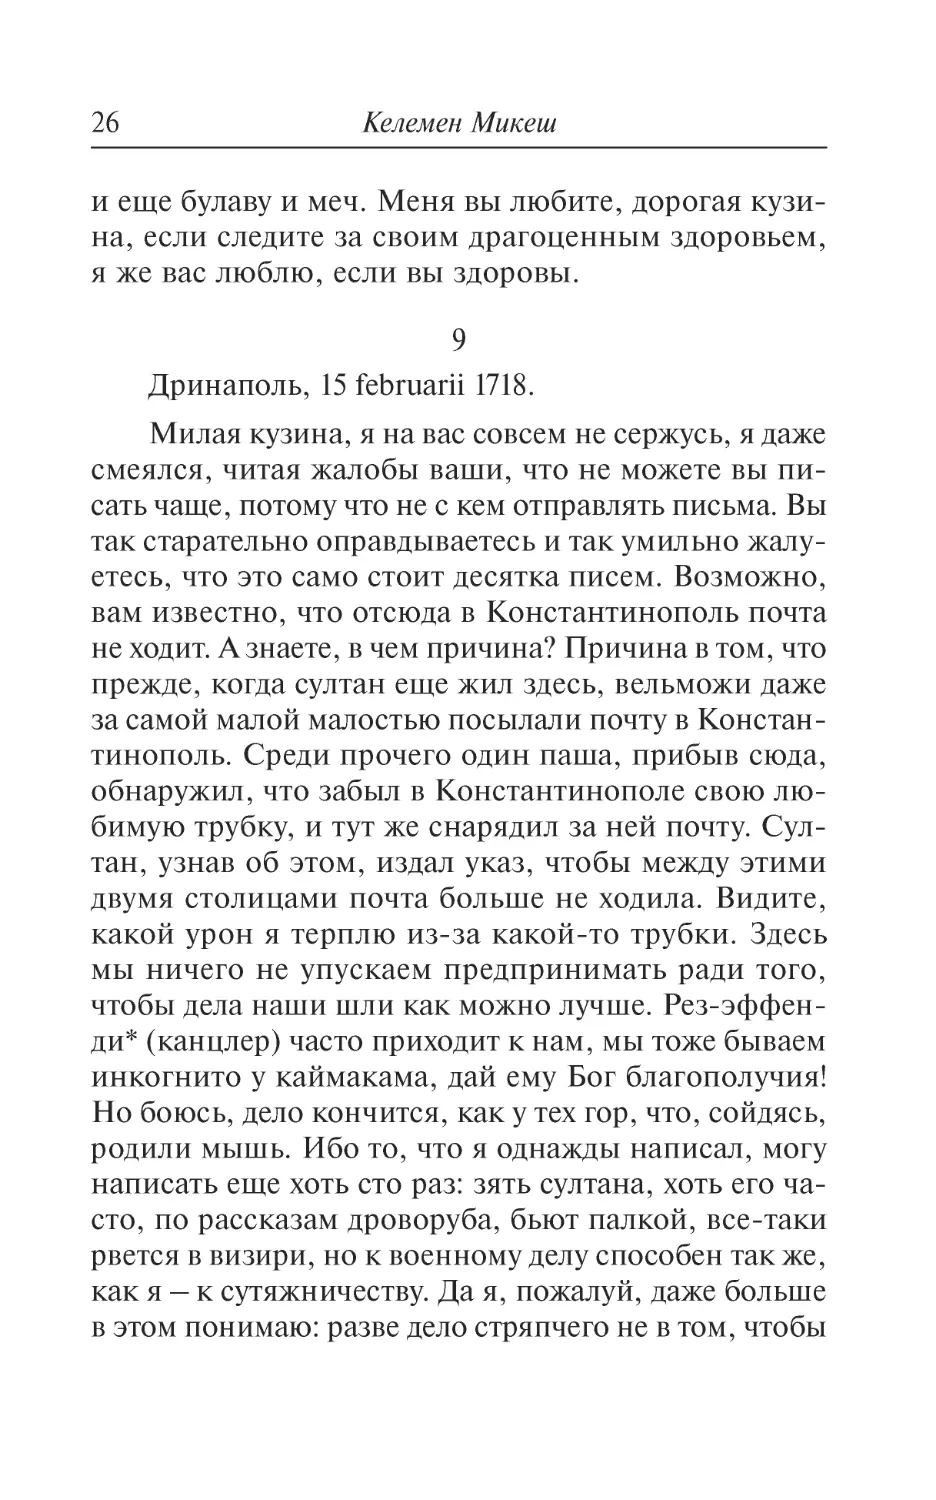 9. Дринаполь, 15 februarii 1718